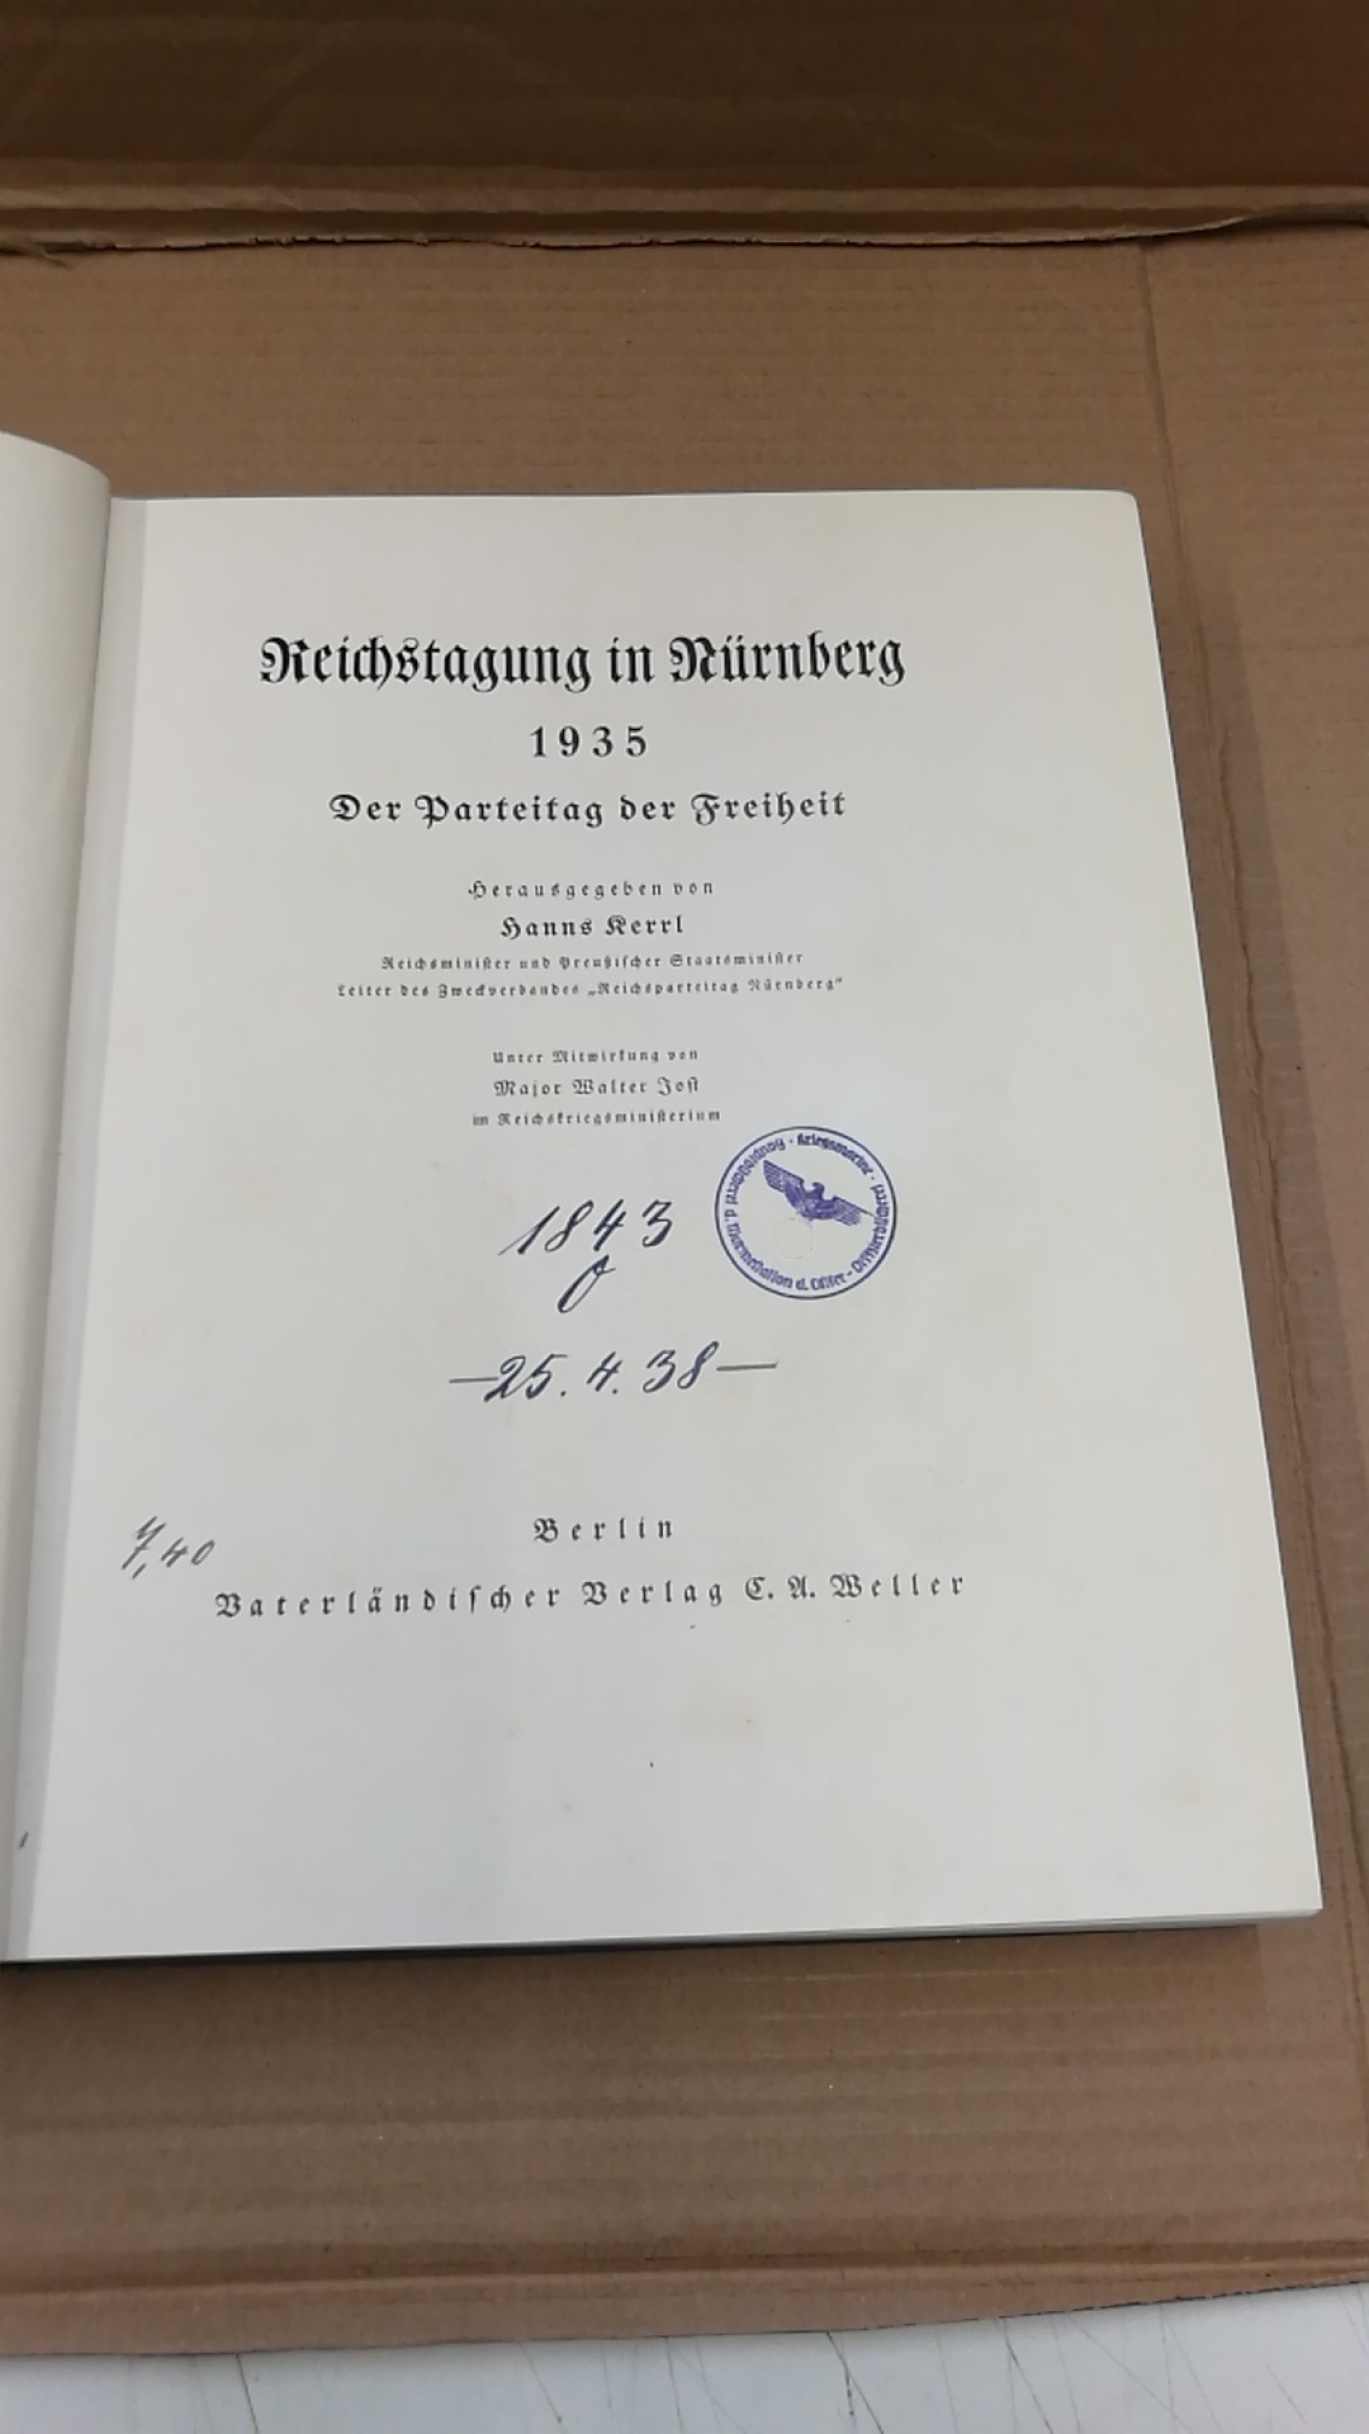 Kerrl, Hanns: Reichstagung in Nürnberg 1935. Der Parteitag der Freiheit. 